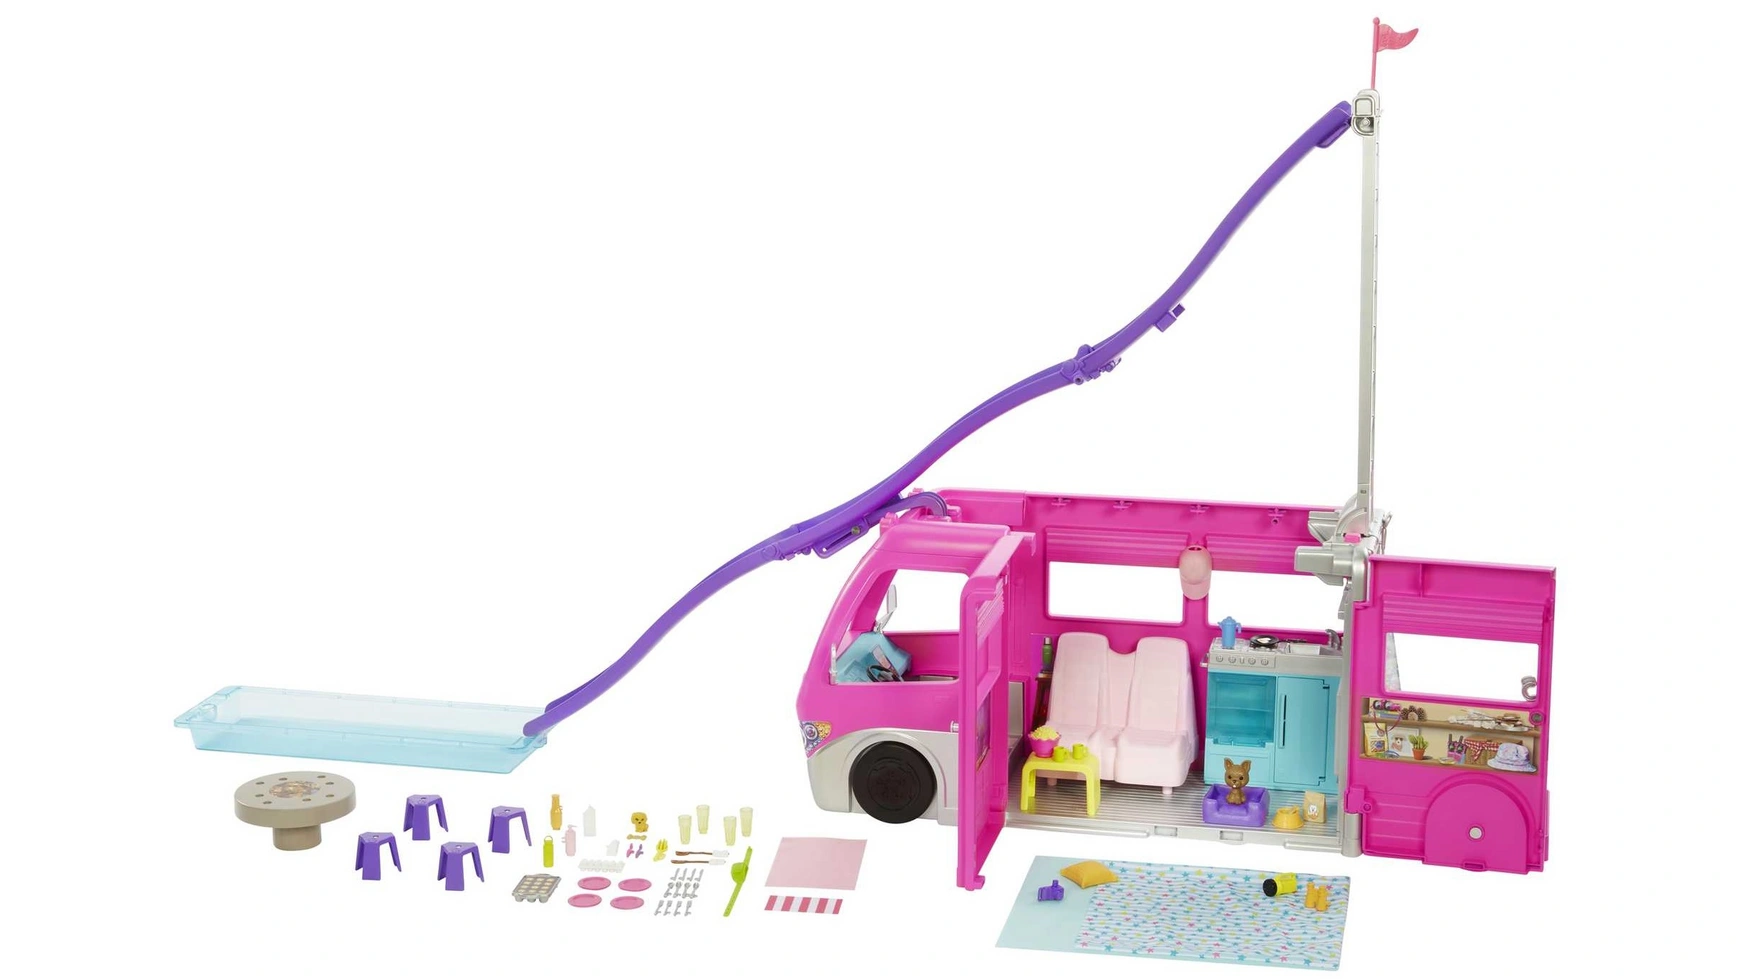 barbie playset with figures pet camper Автомобиль Barbie Super Adventure Camper высотой 76 см с бассейном, горкой и более 60 аксессуарами.